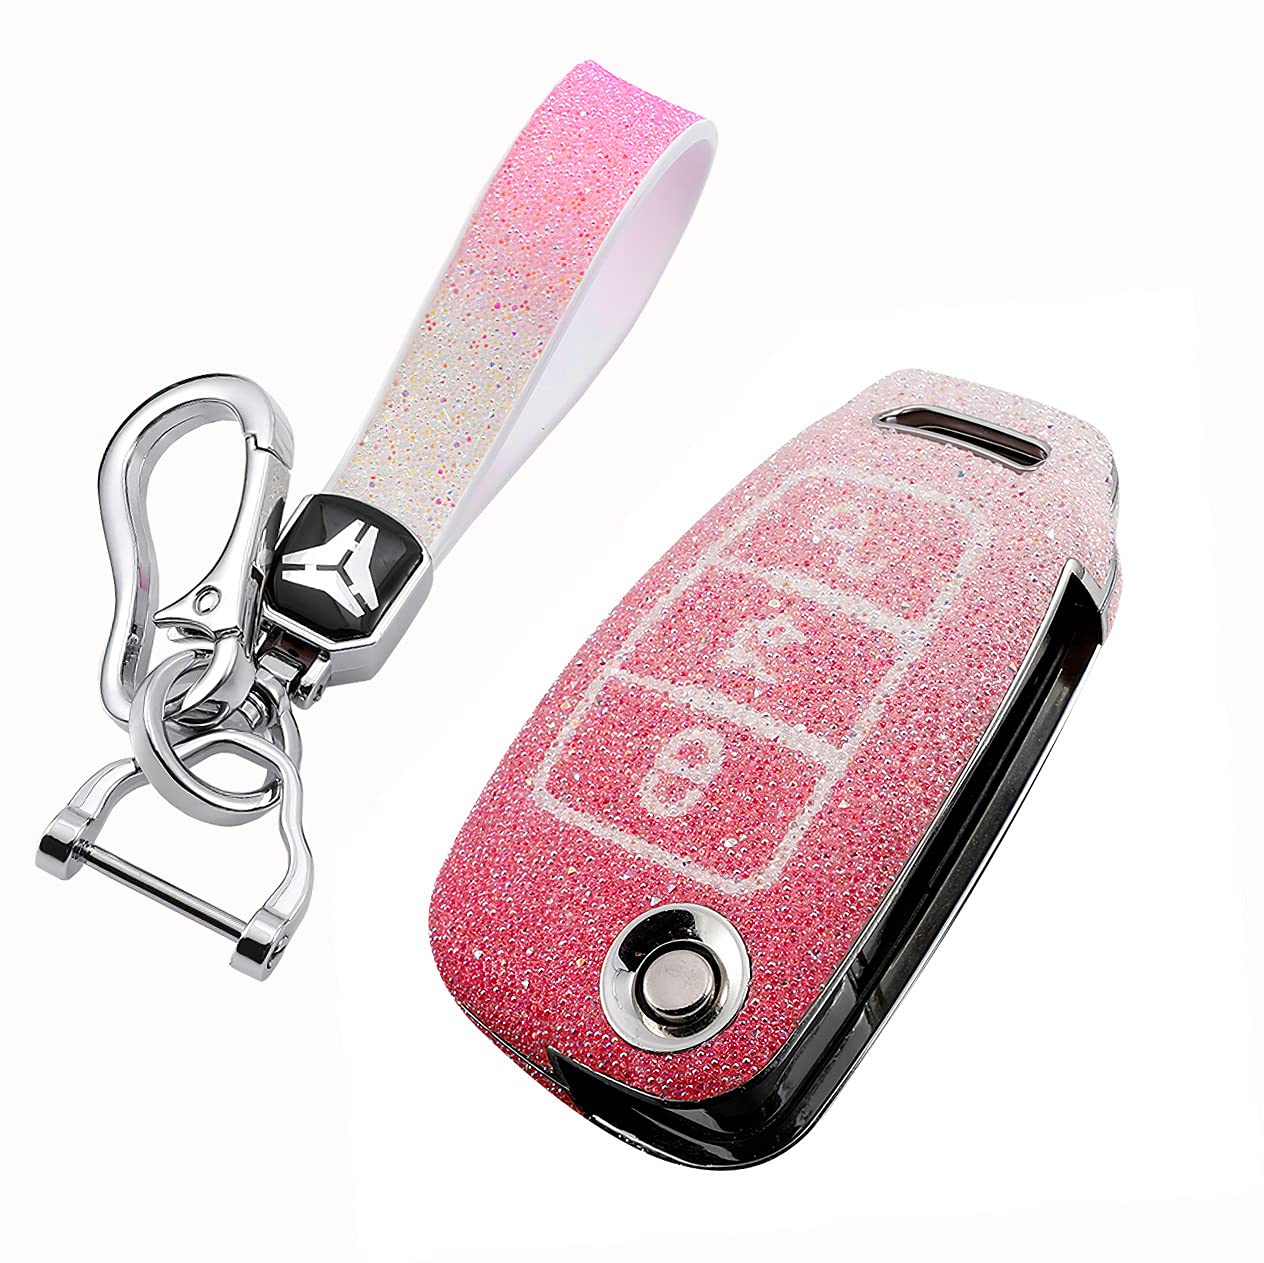 HIBEYO Bling Schlüsselhülle Passt für Audi Schutzhülle Autoschlüssel Hülle Cover für Audi A1 A3 A4 A6 Q3 Q5 Q7 S3 R8 TT Klappschlüssel Fernbedienung Schlüsselbox Schlüsselbund PC+Strass-Rose von HIBEYO